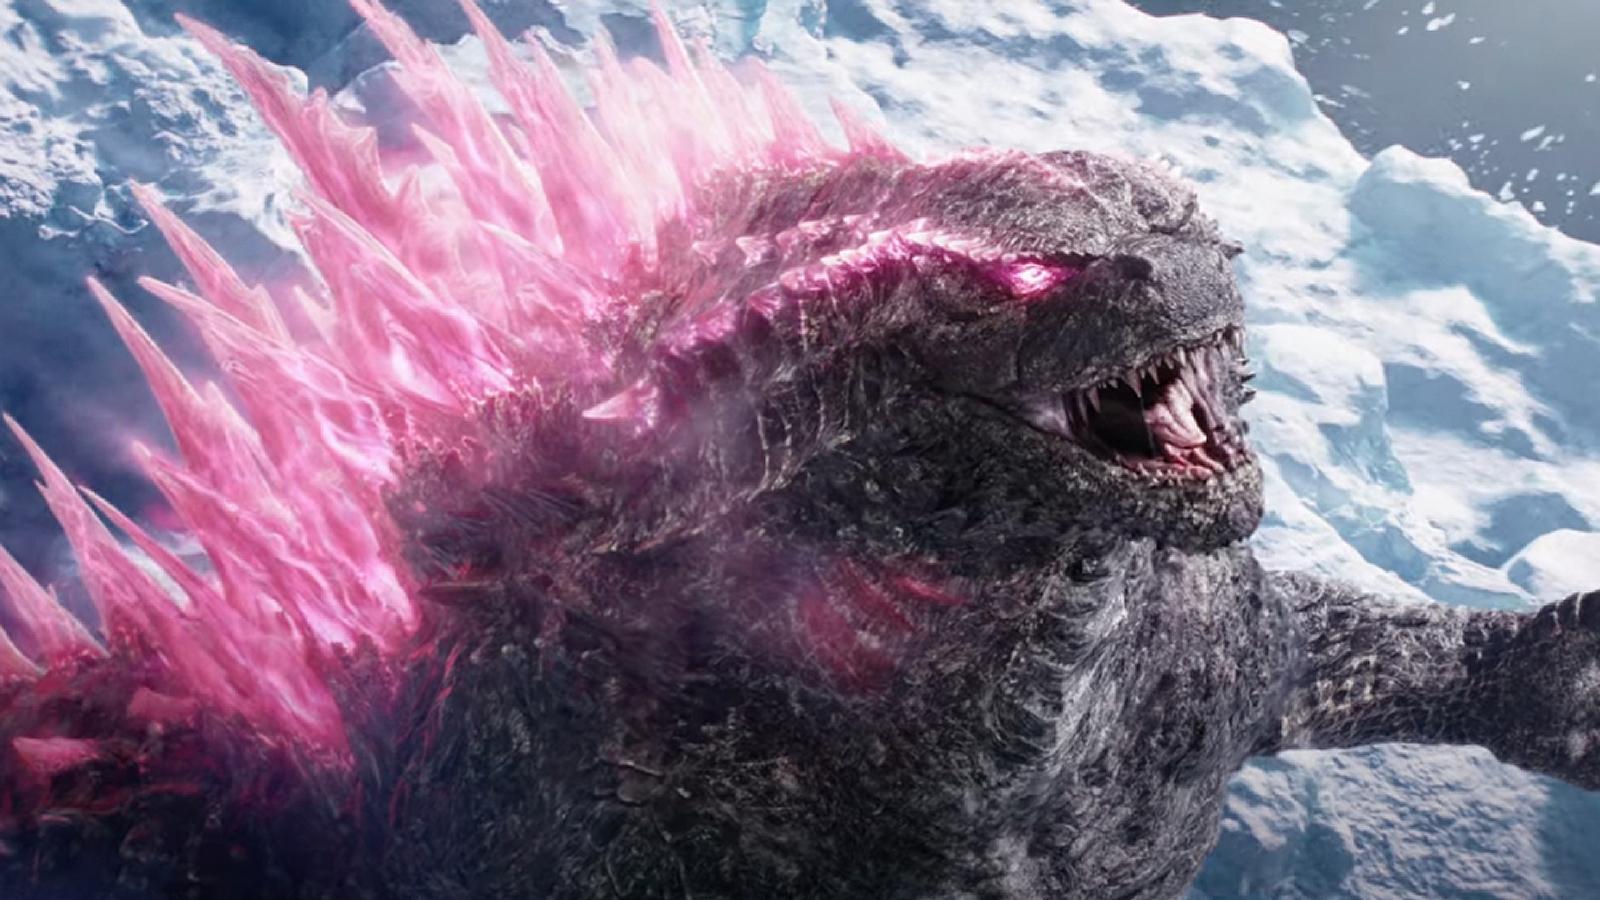 Godzilla in the Godzilla x Kong trailer